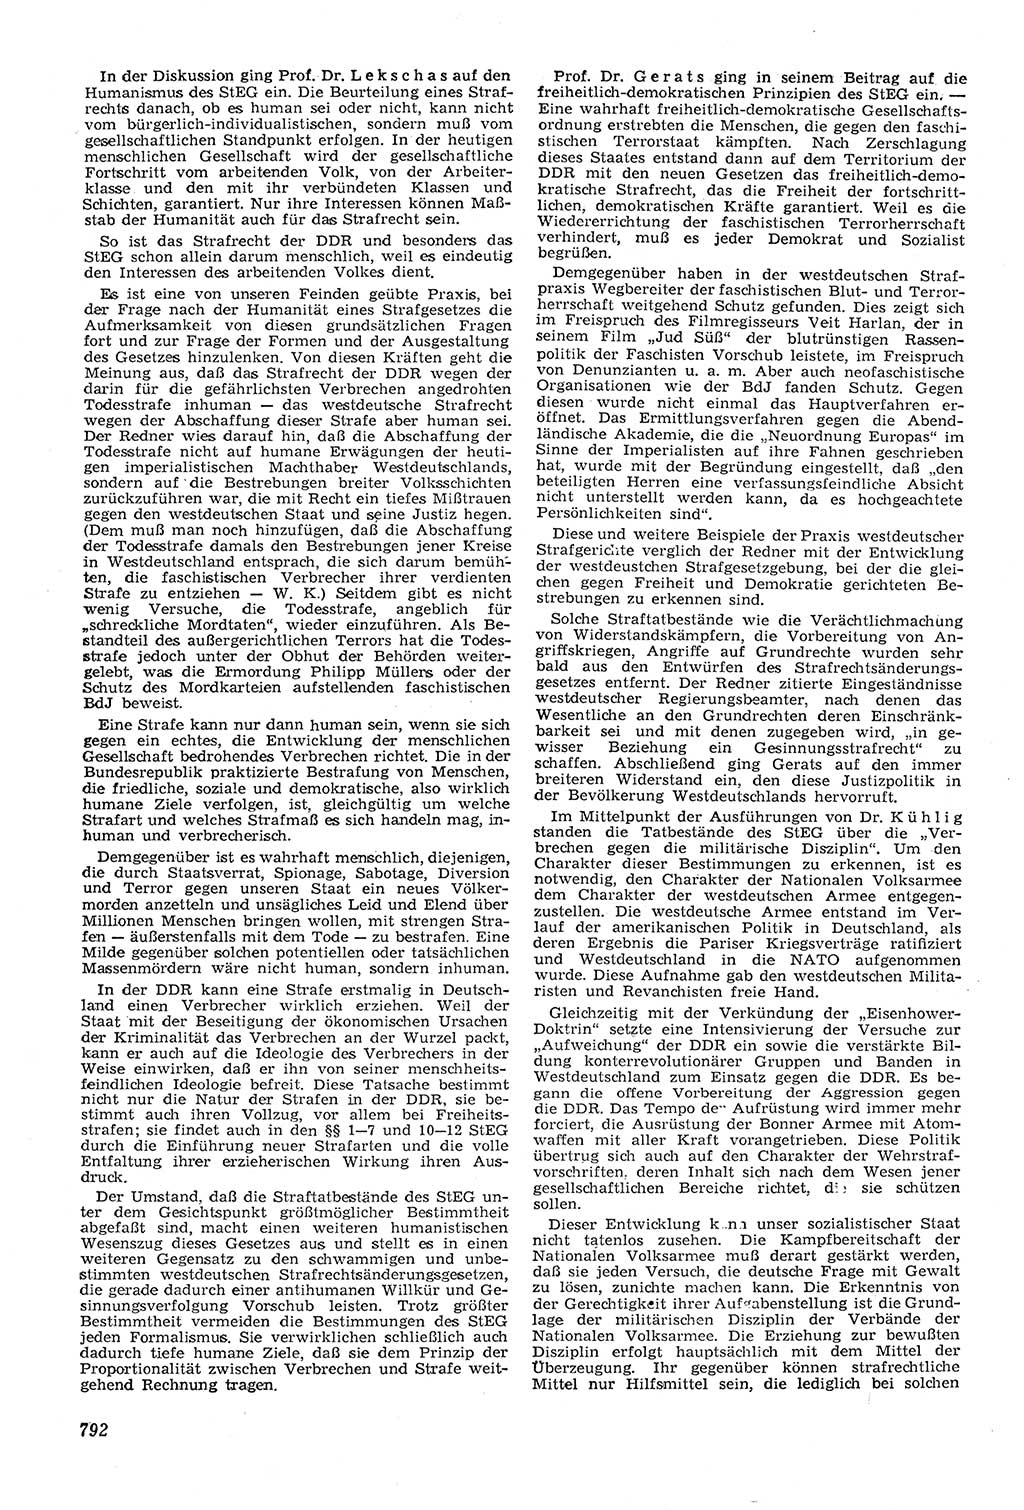 Neue Justiz (NJ), Zeitschrift für Recht und Rechtswissenschaft [Deutsche Demokratische Republik (DDR)], 11. Jahrgang 1957, Seite 792 (NJ DDR 1957, S. 792)